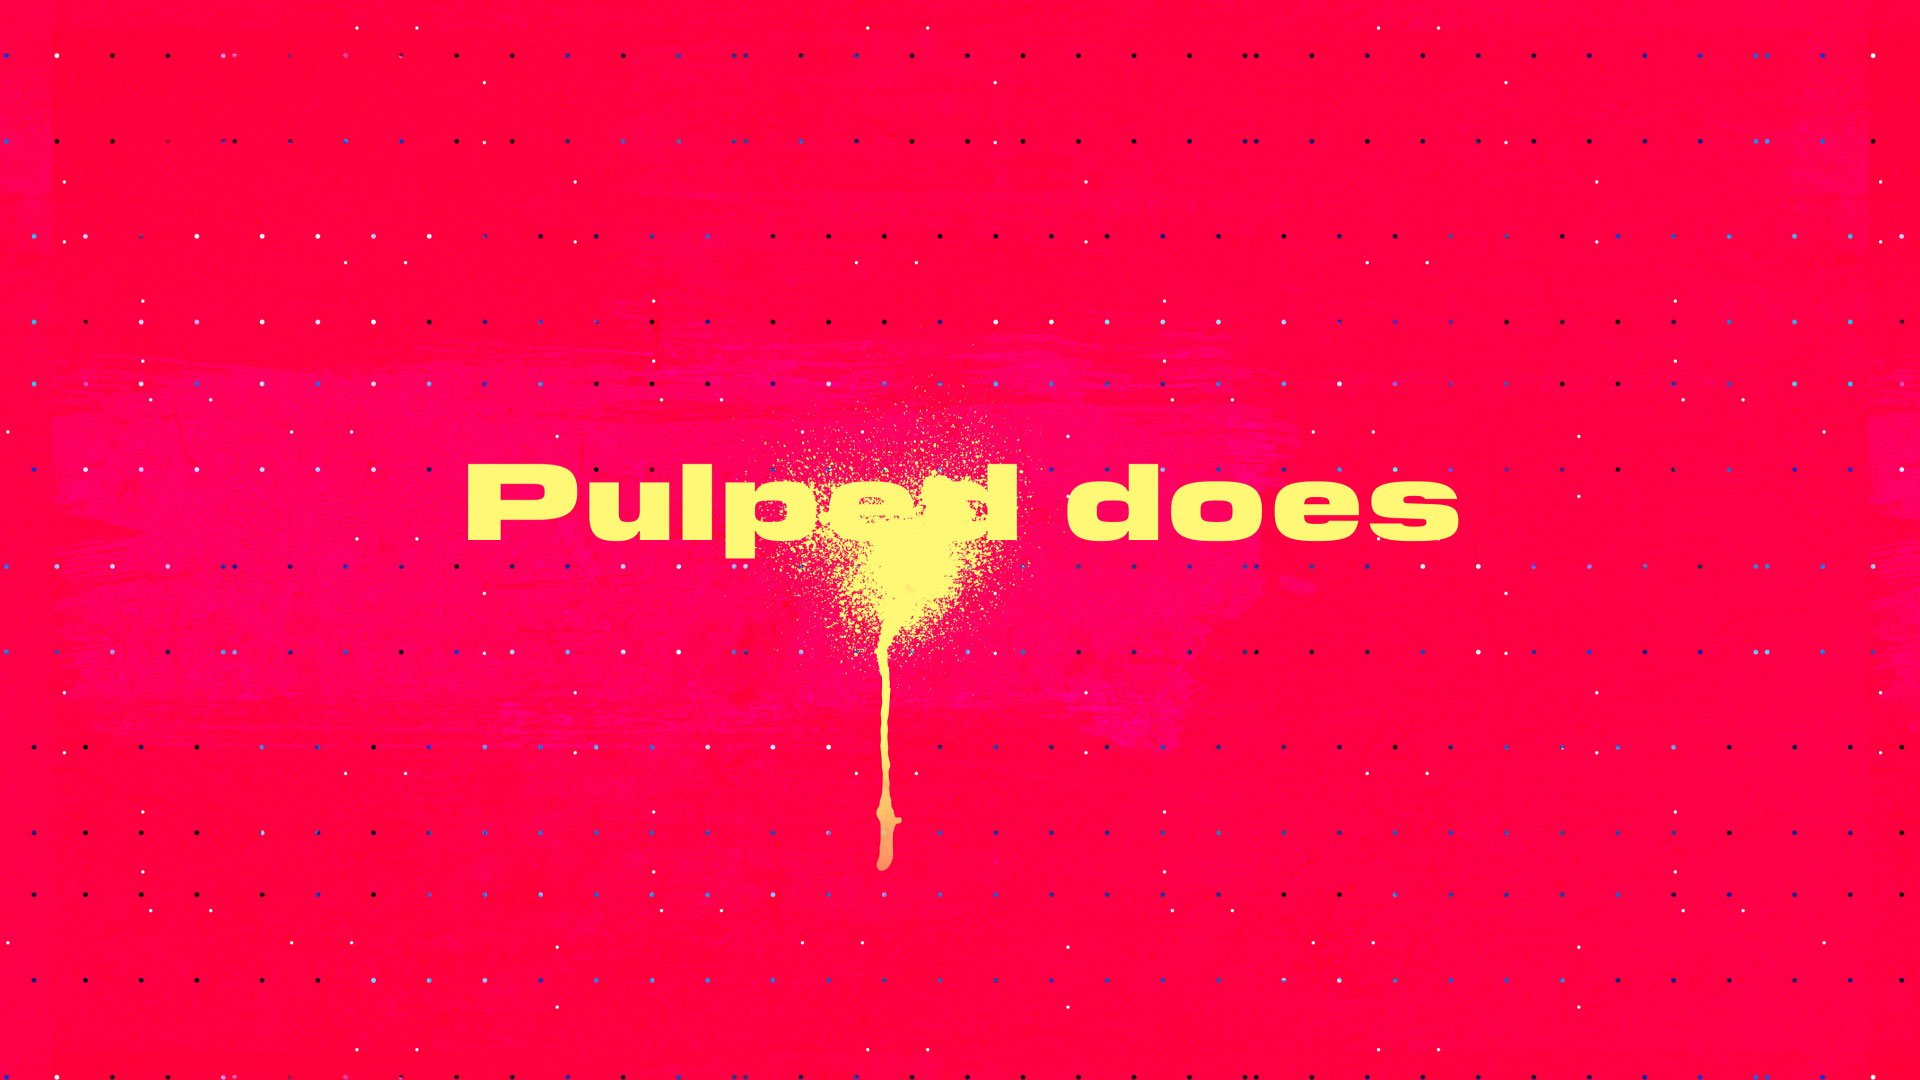 PulpedTV_10.jpg